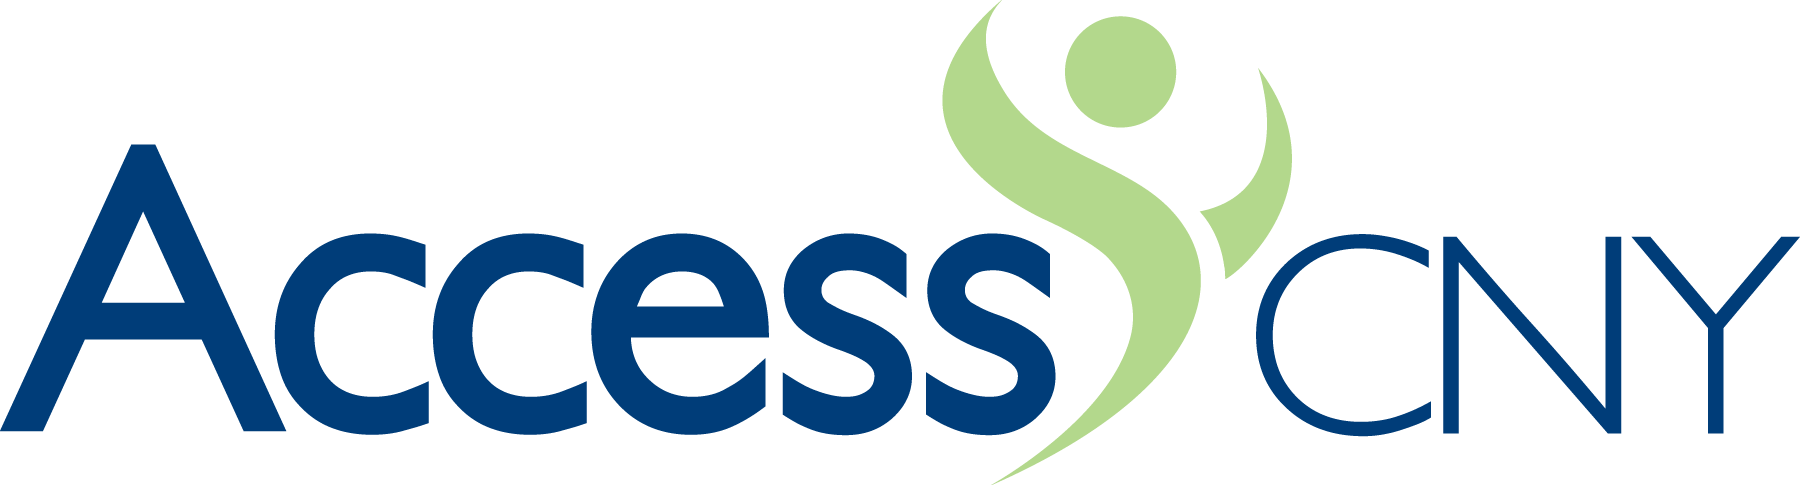 AccessCNY-logo